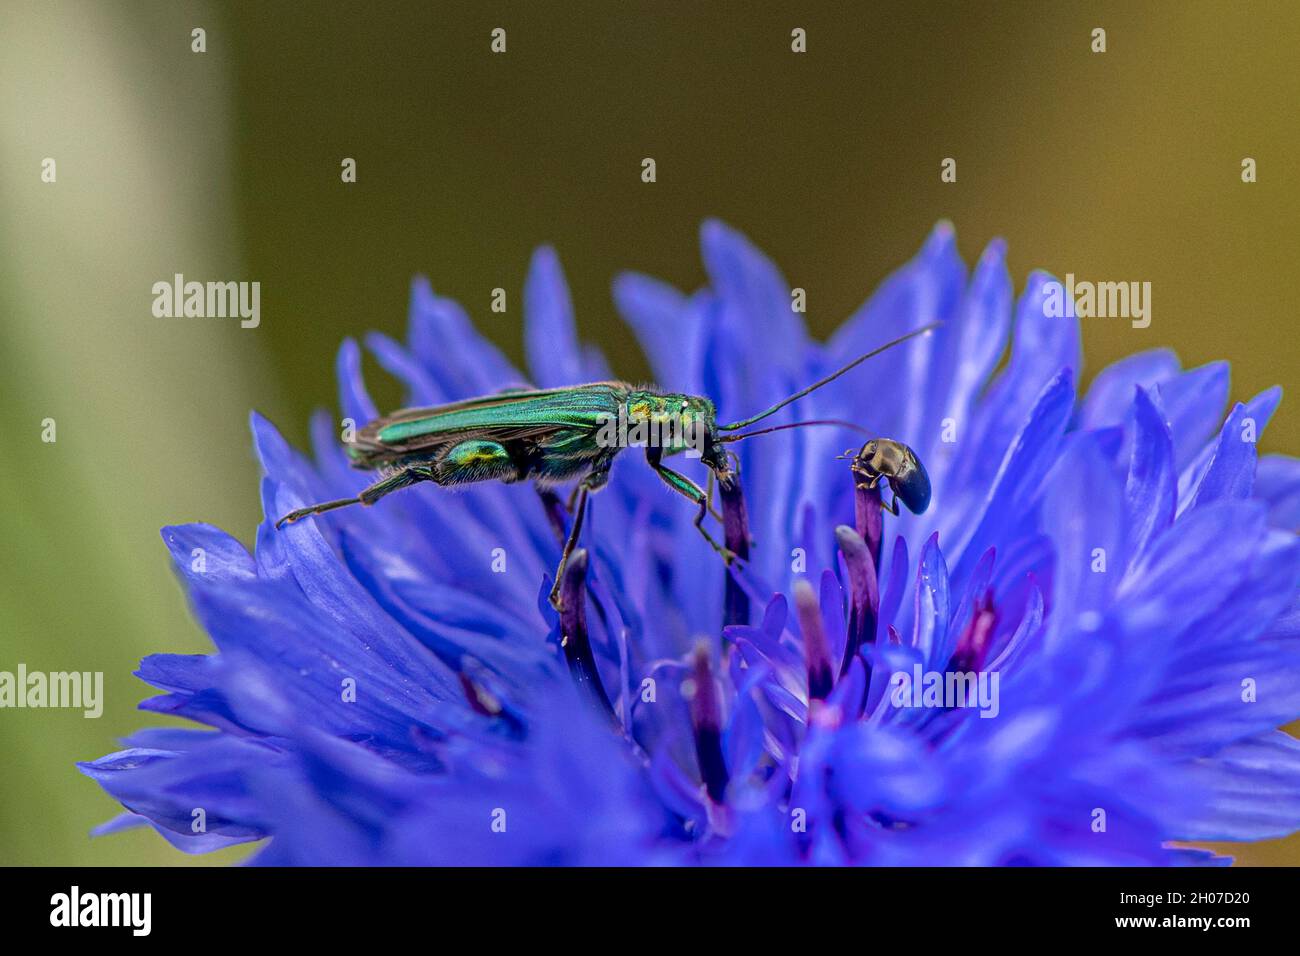 coléoptère vert métallique brillant sur la fleur de maïs bleue avec peu d'autres coléoptères se mangeant ensemble - image macro Banque D'Images